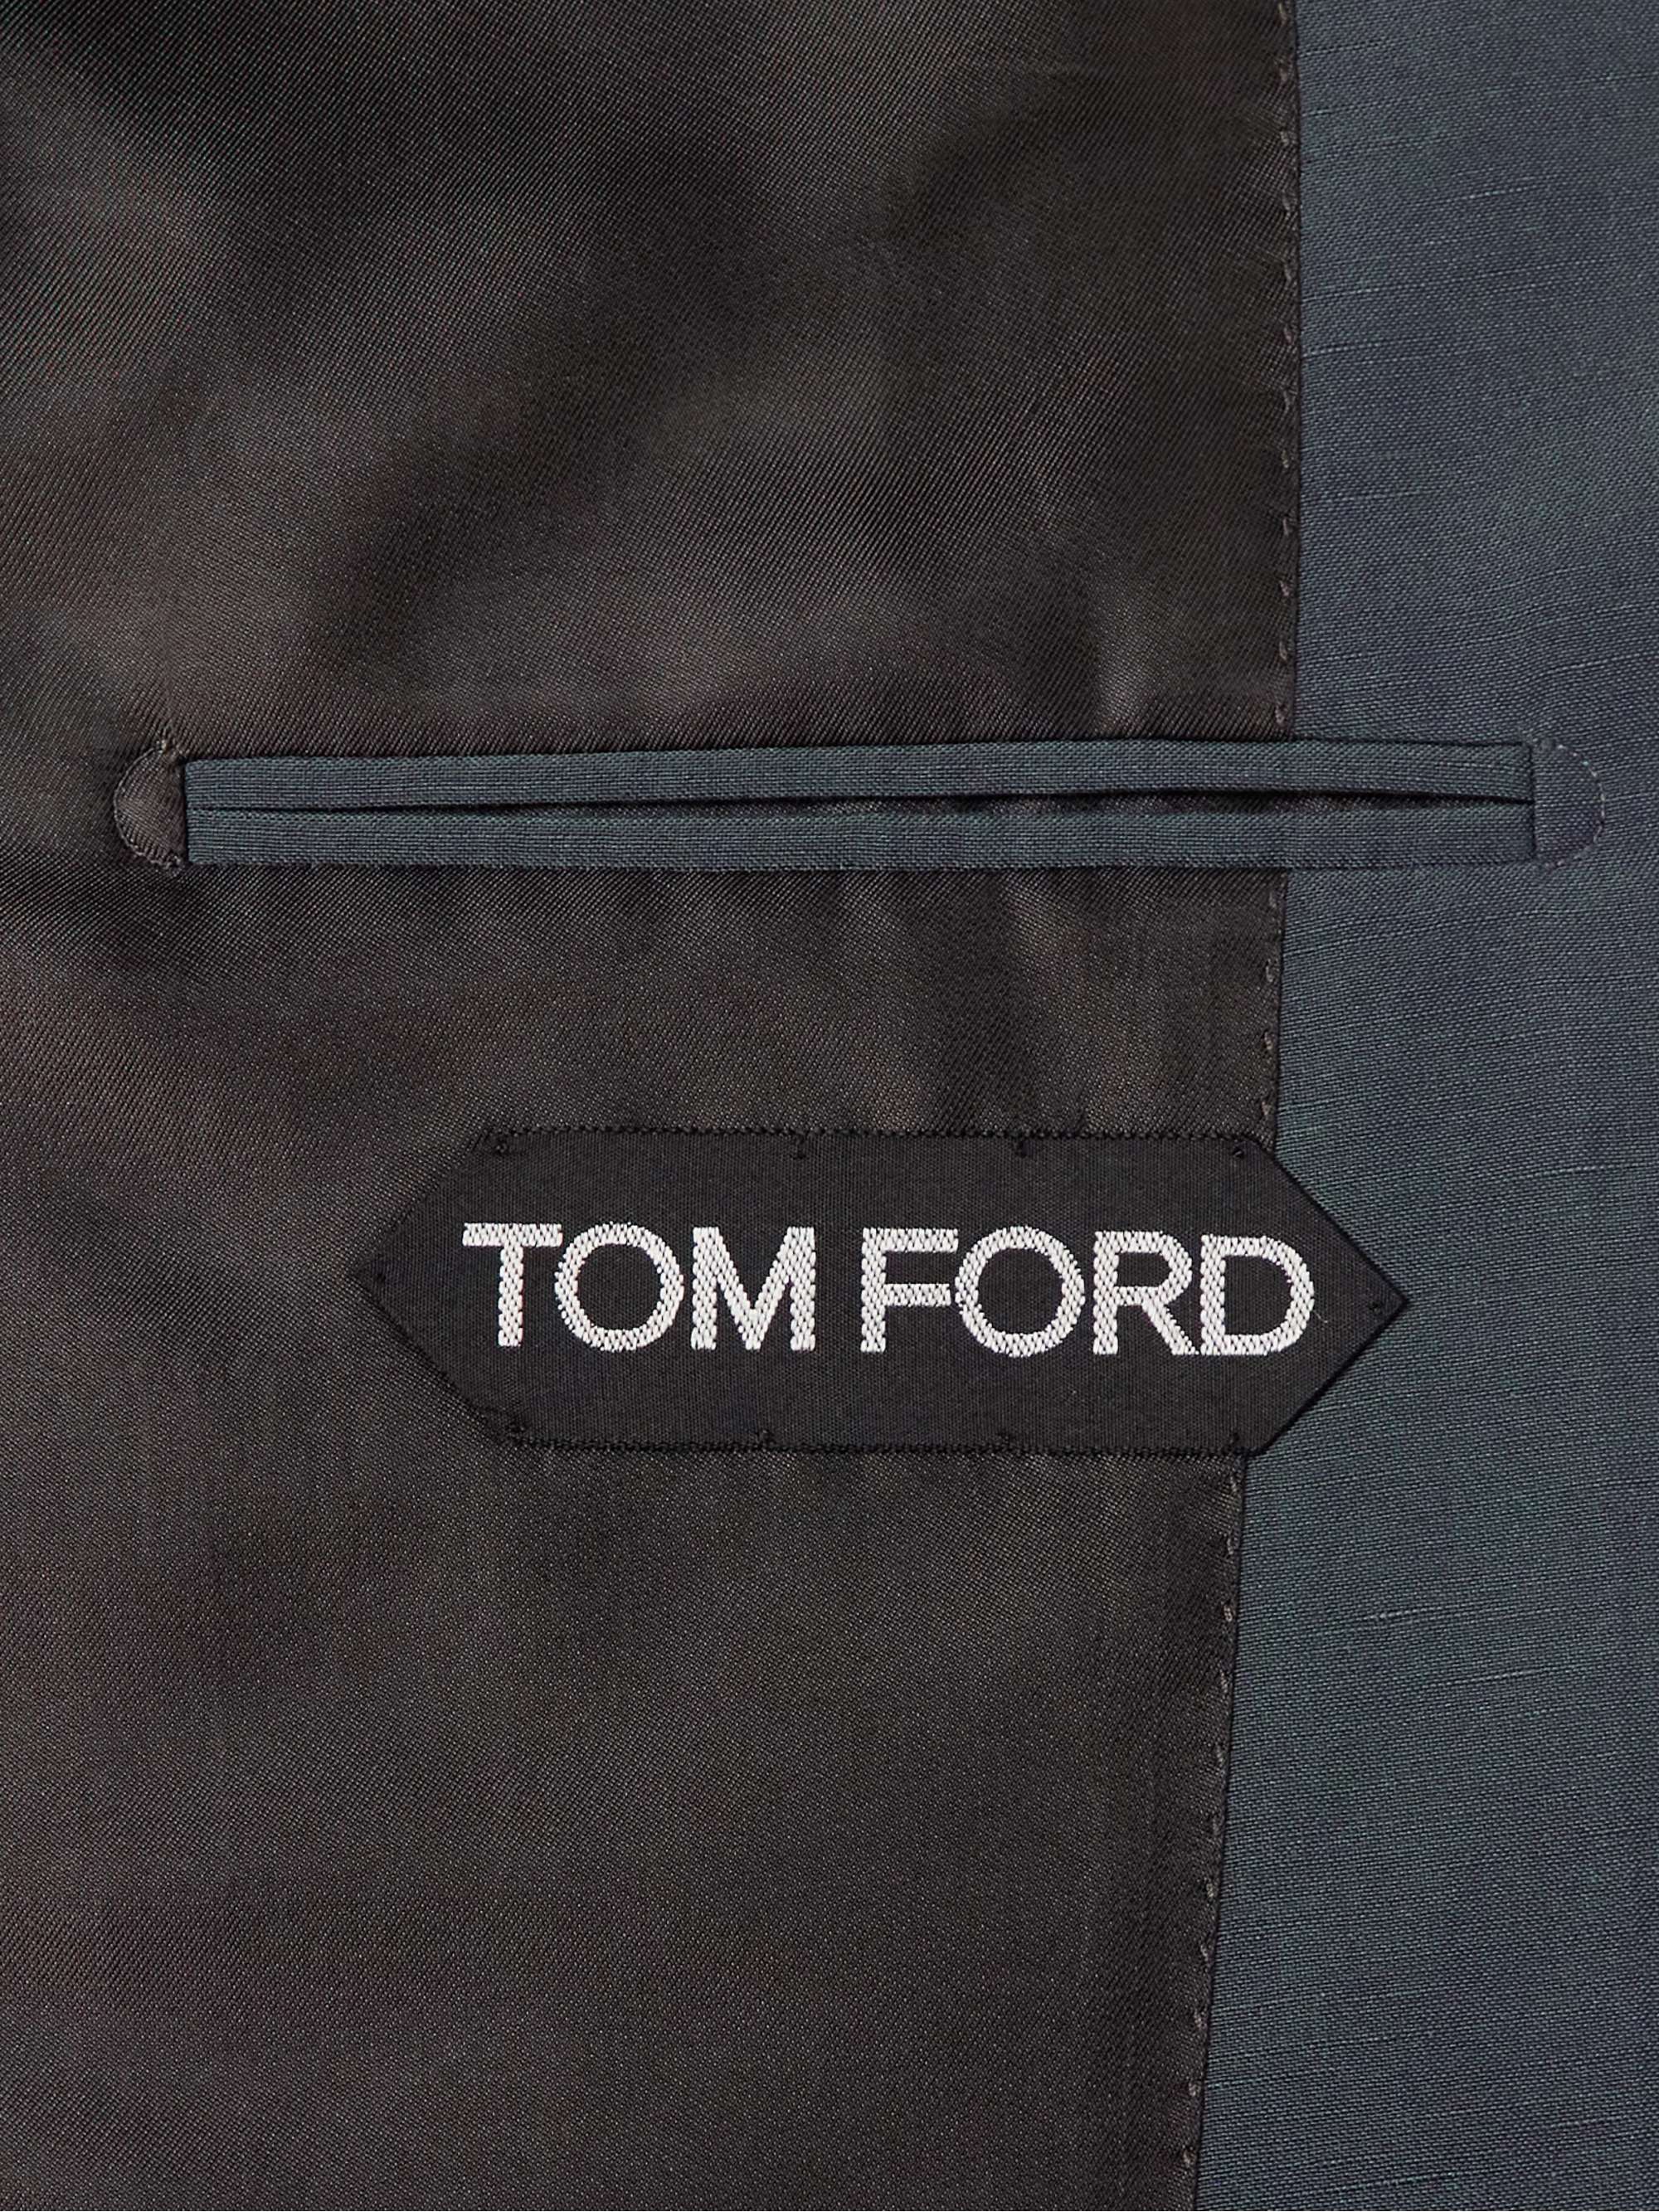 TOM FORD Silk-Blend Suit Jacket for Men | MR PORTER